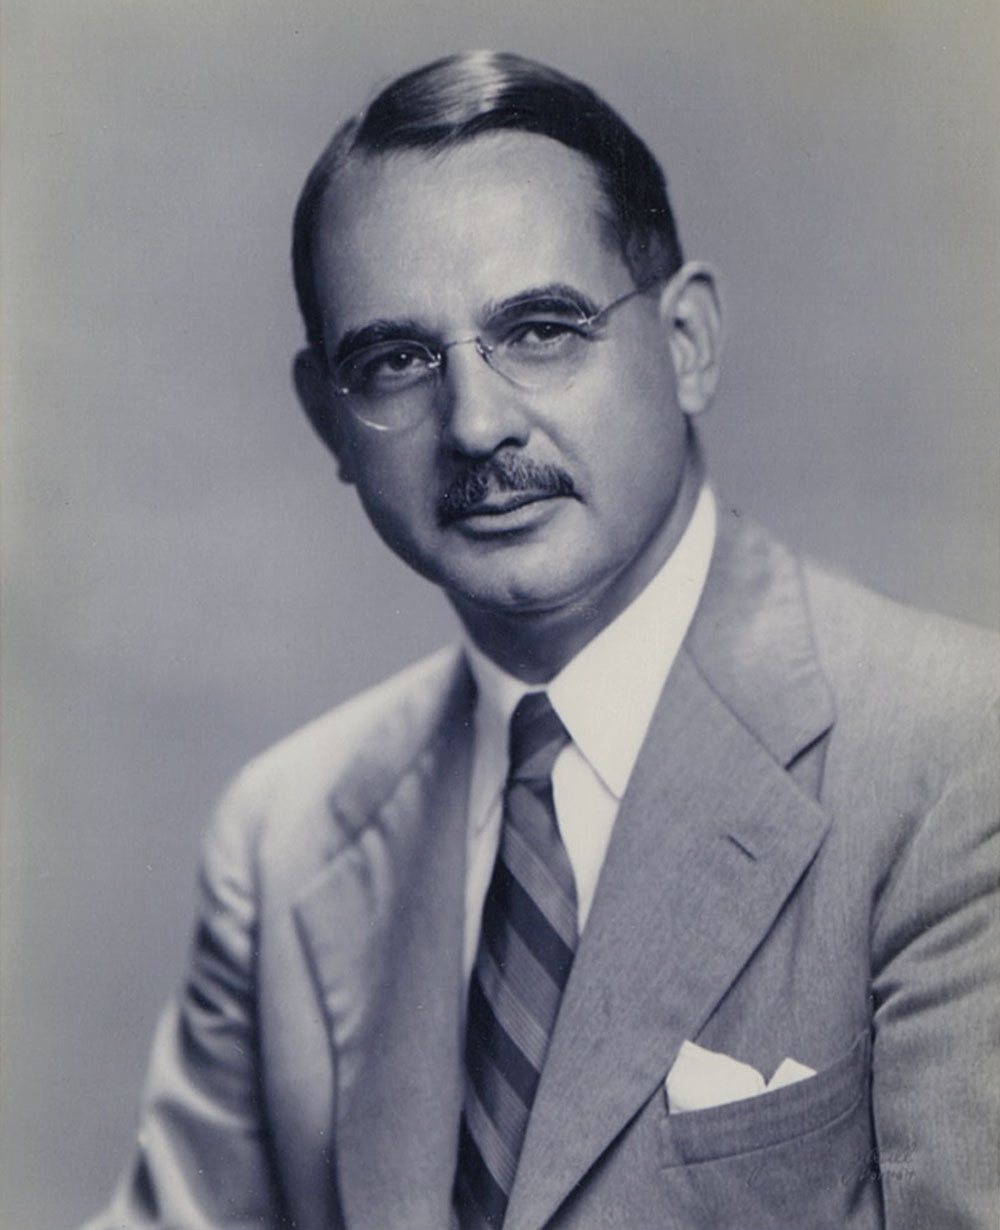 William G. Werner, PRSA President of 1953